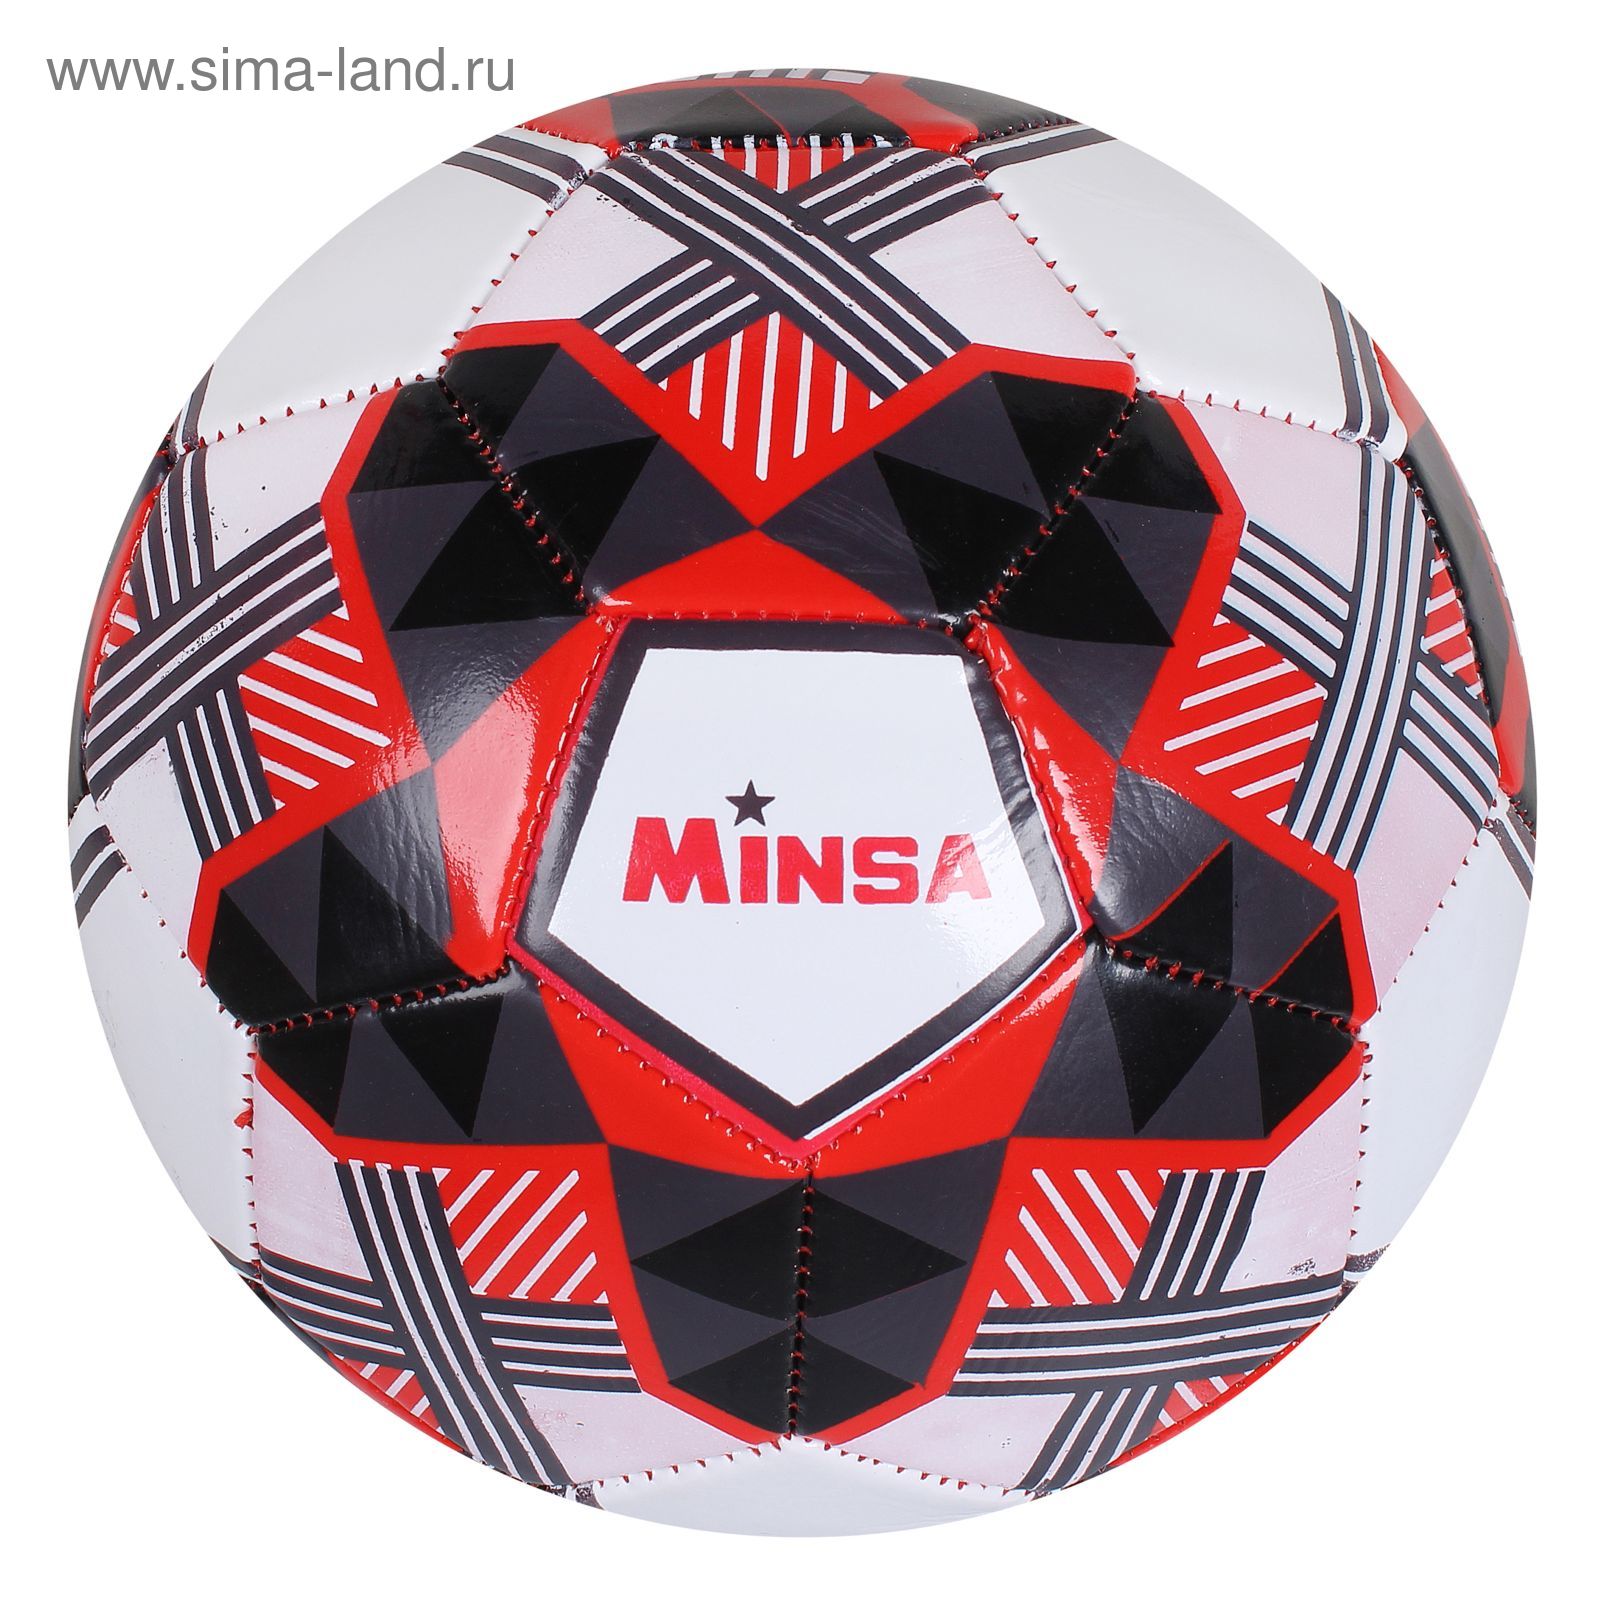 Мяч футбольный Minsa F19, 32 панели, PVC, 2 подслоя, машинная сшивка, размер 5